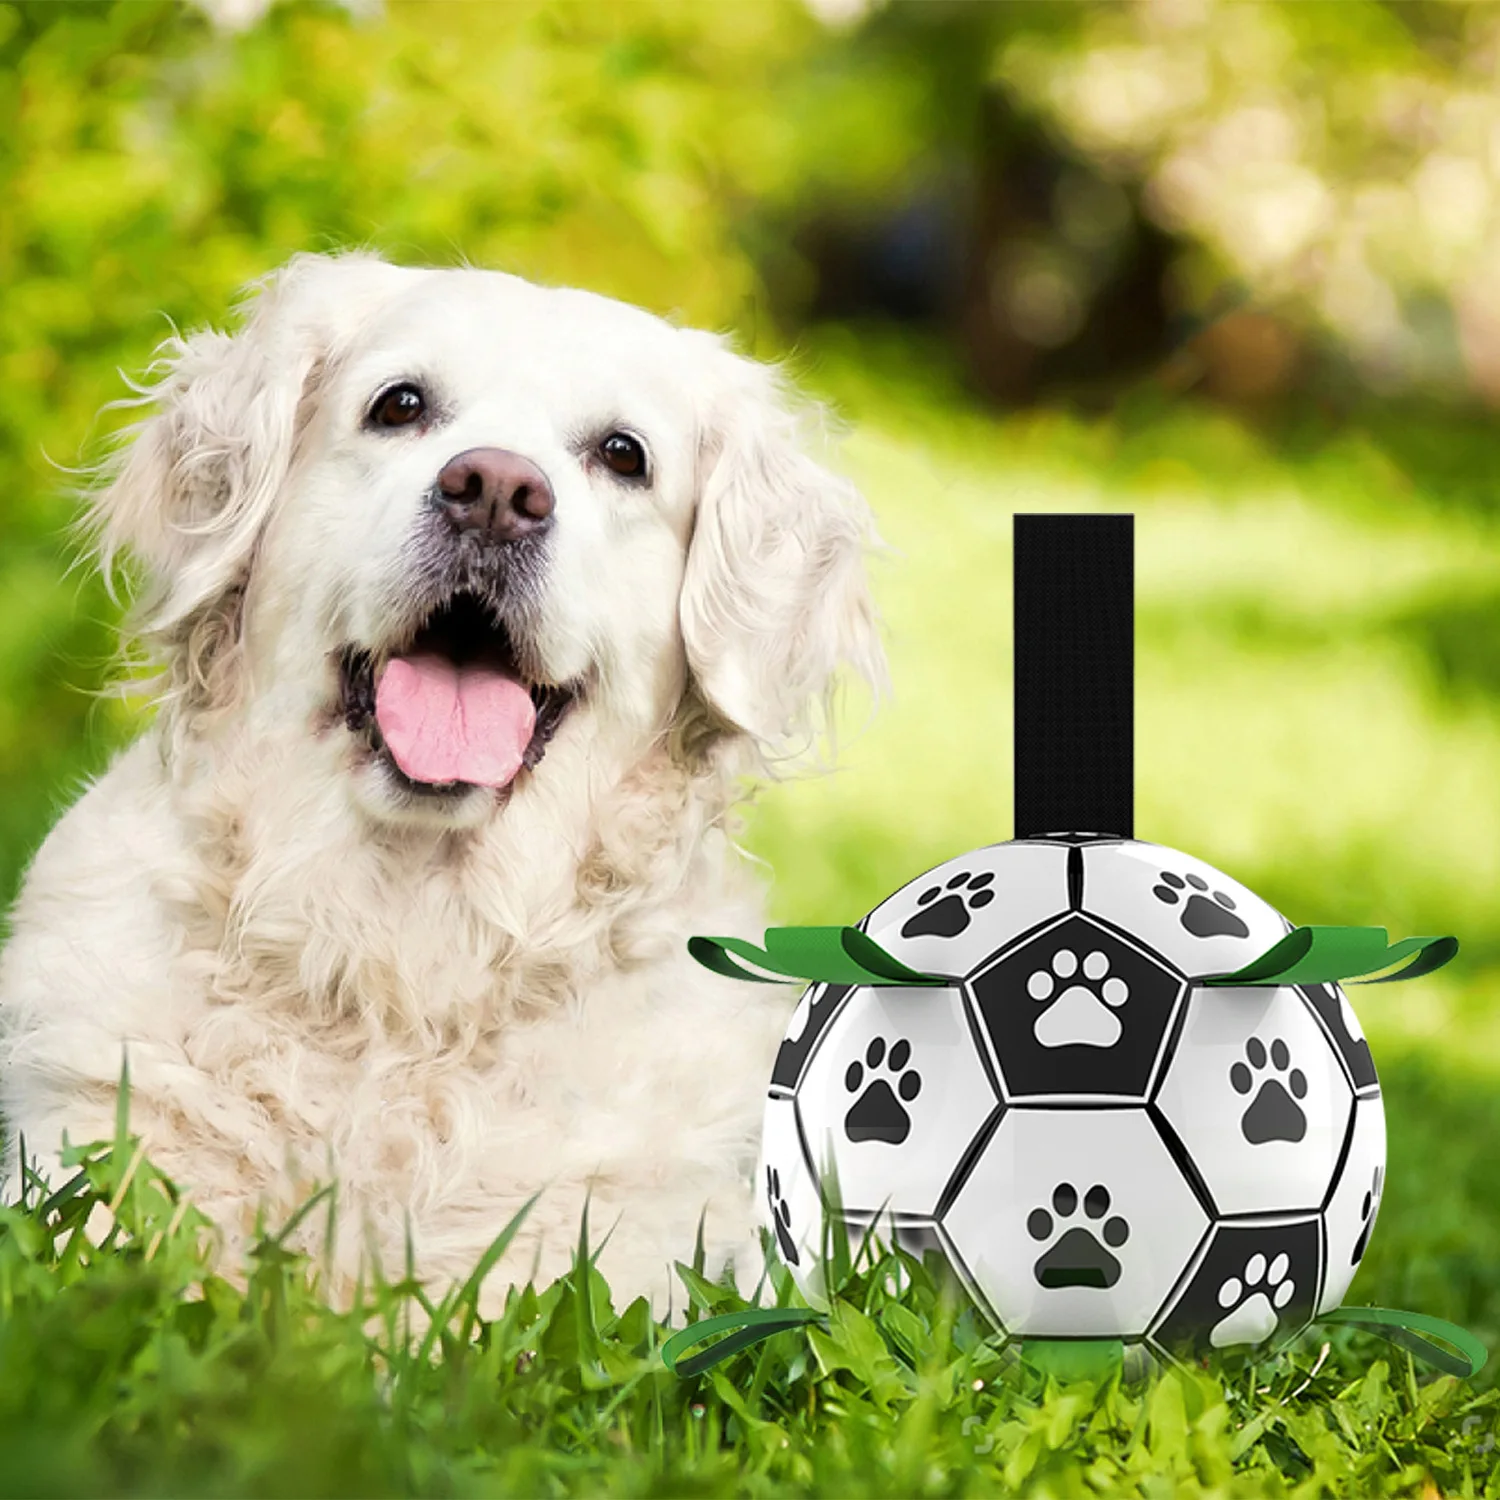 

Собака, футбольный мяч с ремешками, интерактивные игрушки для собаки для тяги, подарок на день рождения щенка, водная игрушка для собаки, прочные собачьи мячики